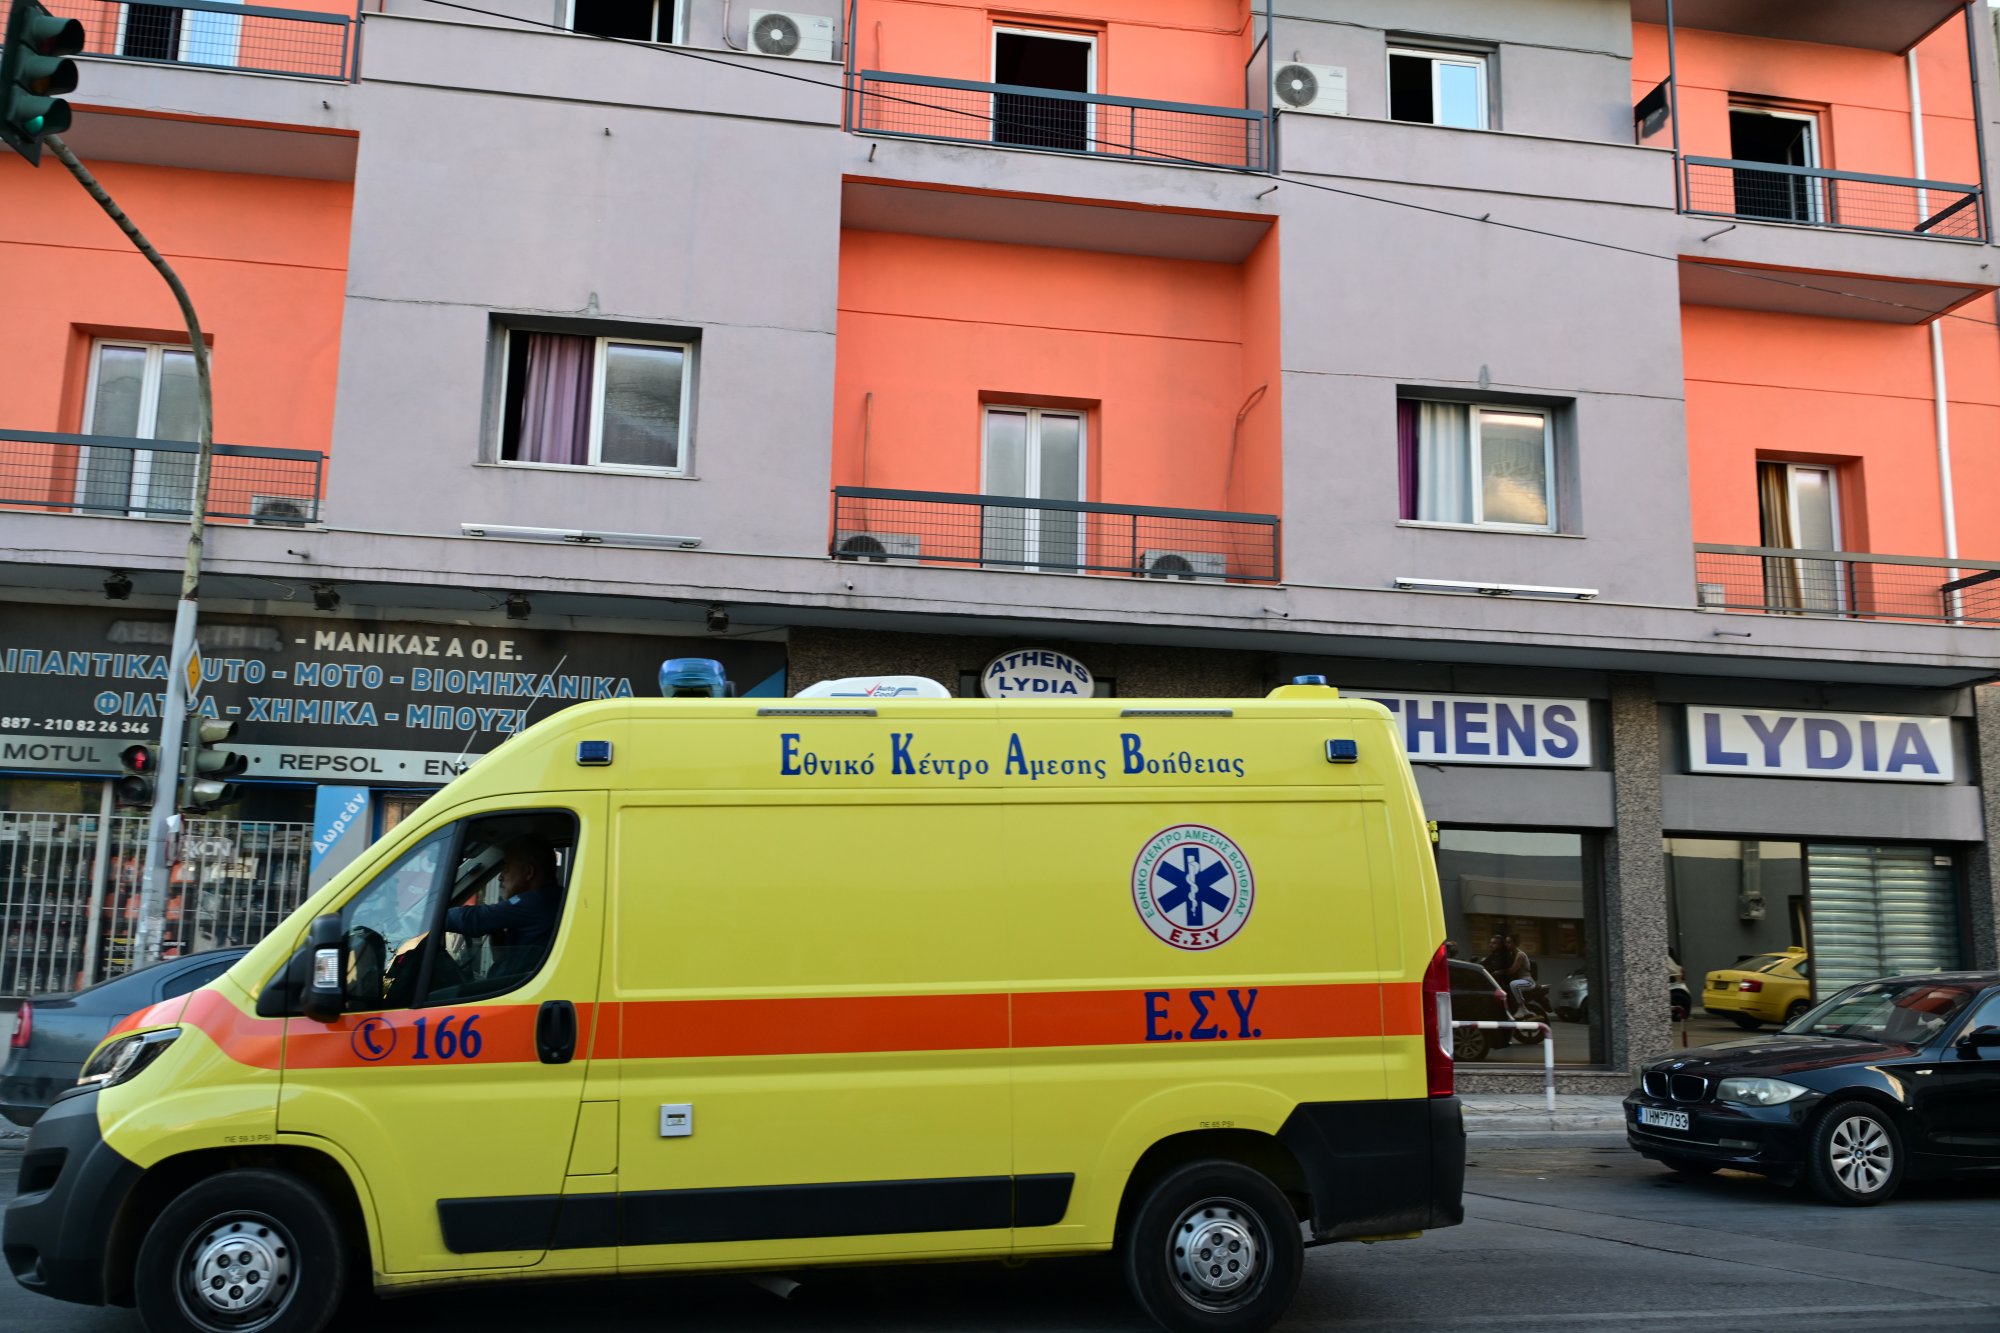 Σορός άνδρα εντοπίστηκε σε ξενοδοχείο στη Λιοσίων μετά από πυρκαγιά - Απεγκλωβίστηκαν πέντε άτομα